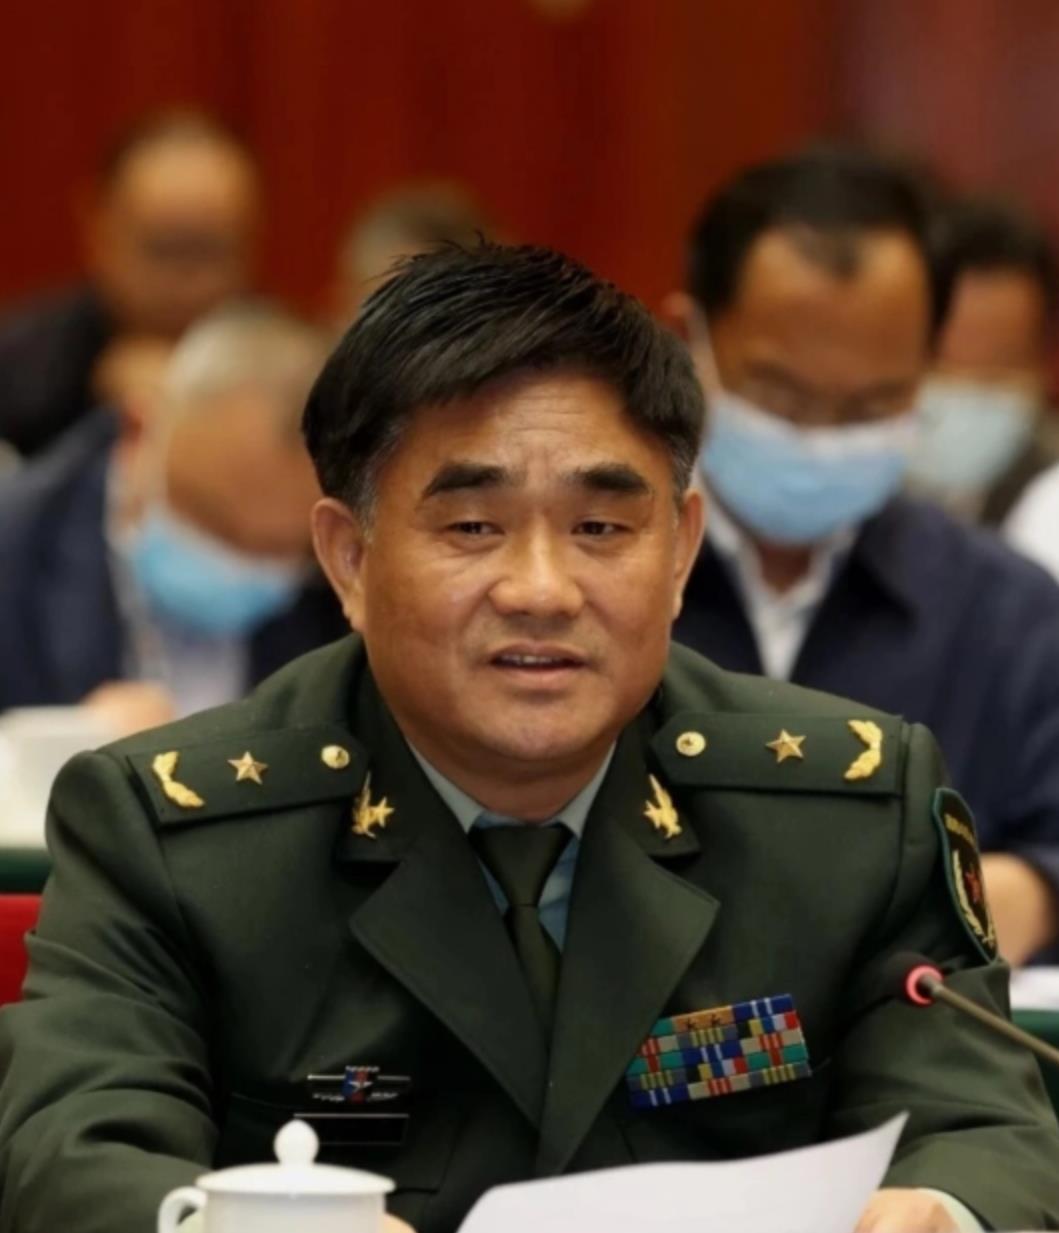 鲁传刚,男,中国共产党党员,中国人民解放军陆军少将.